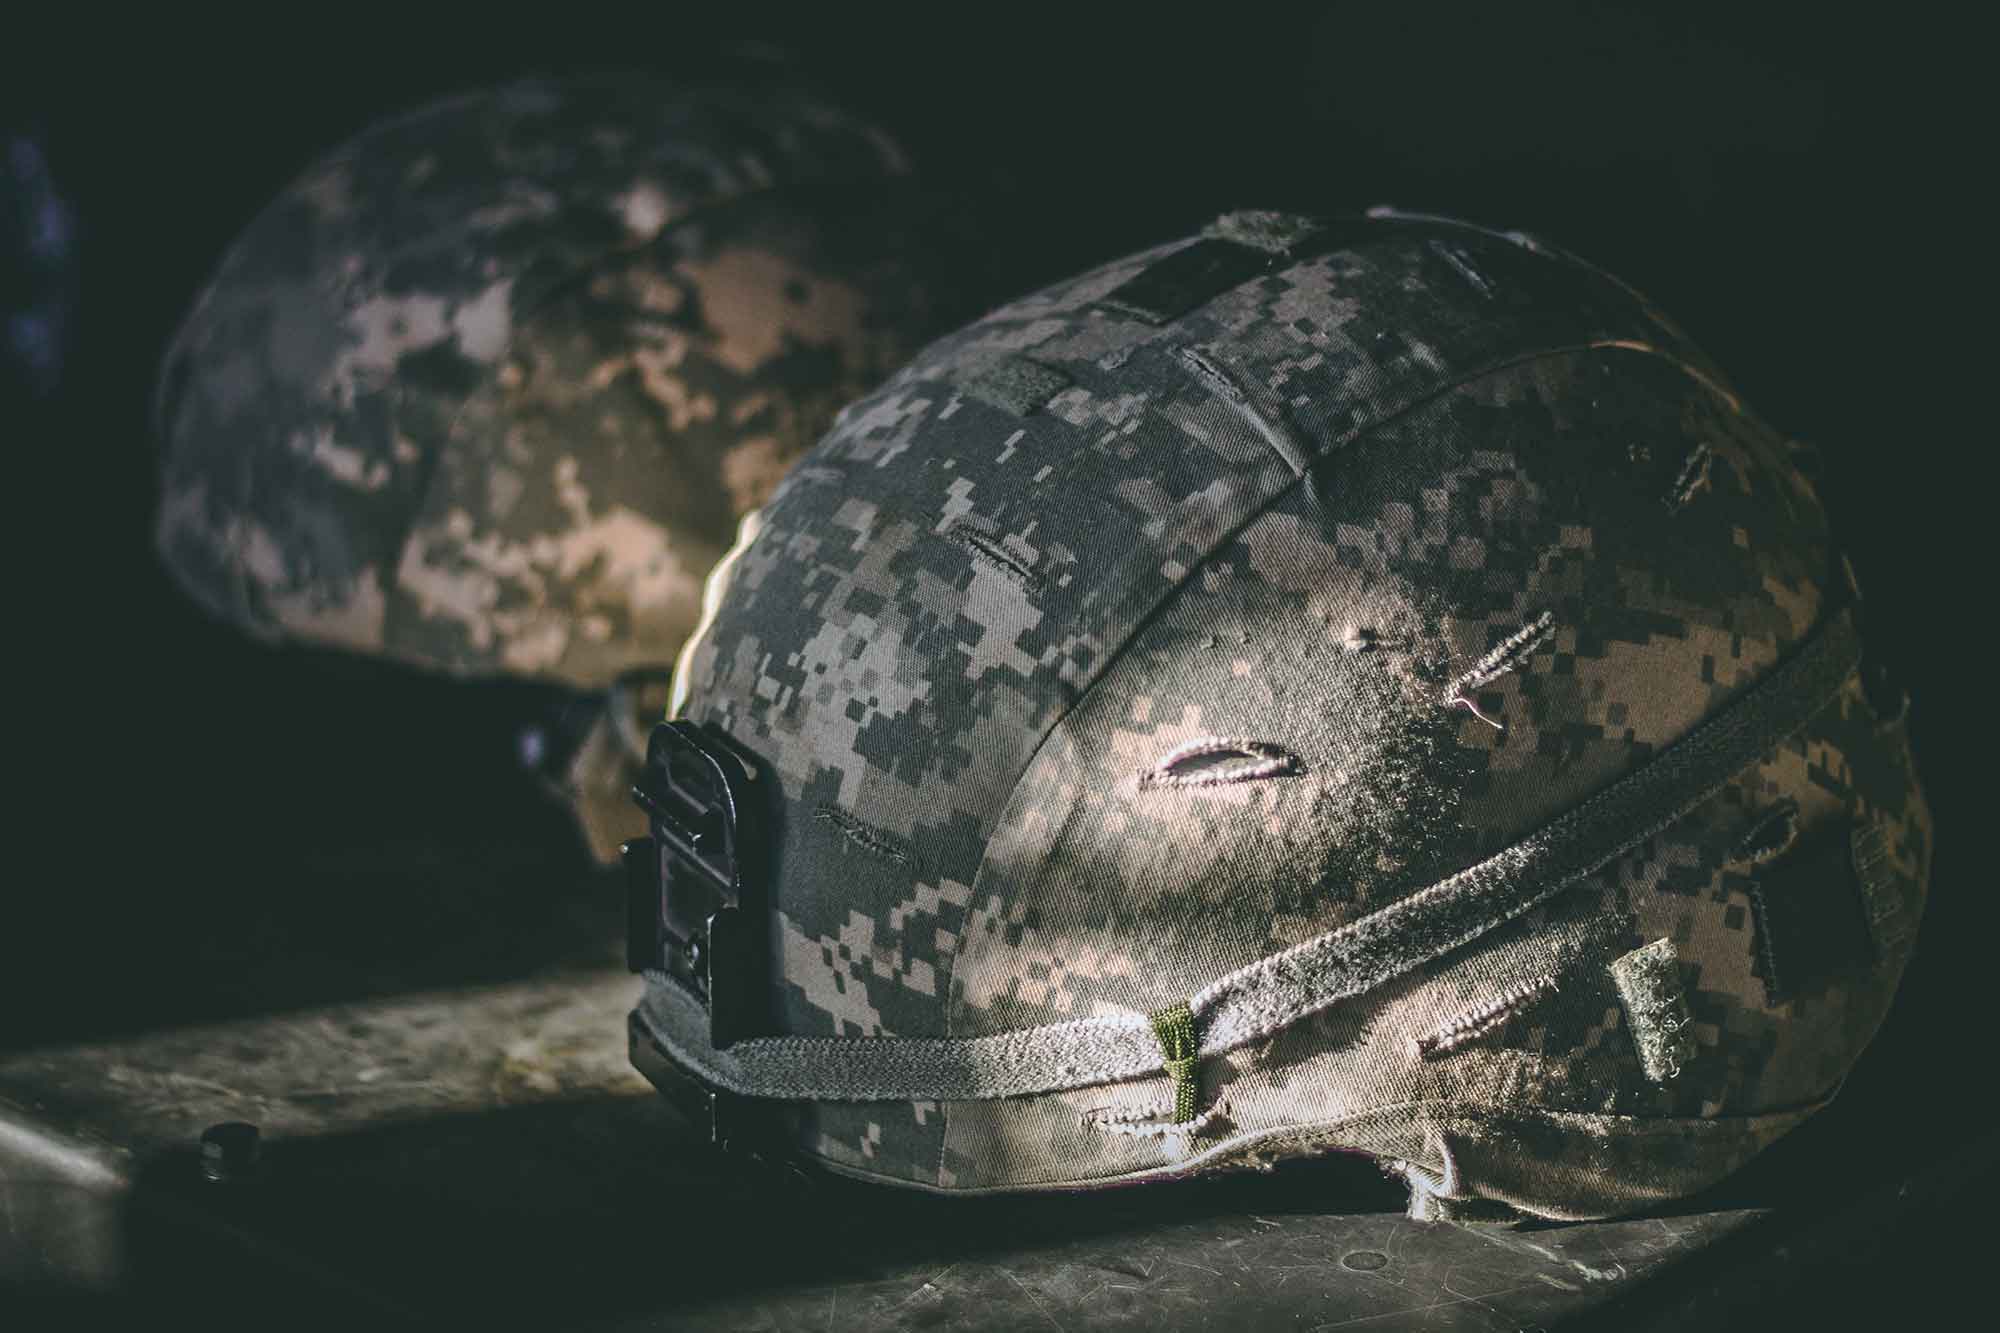 Army helmet